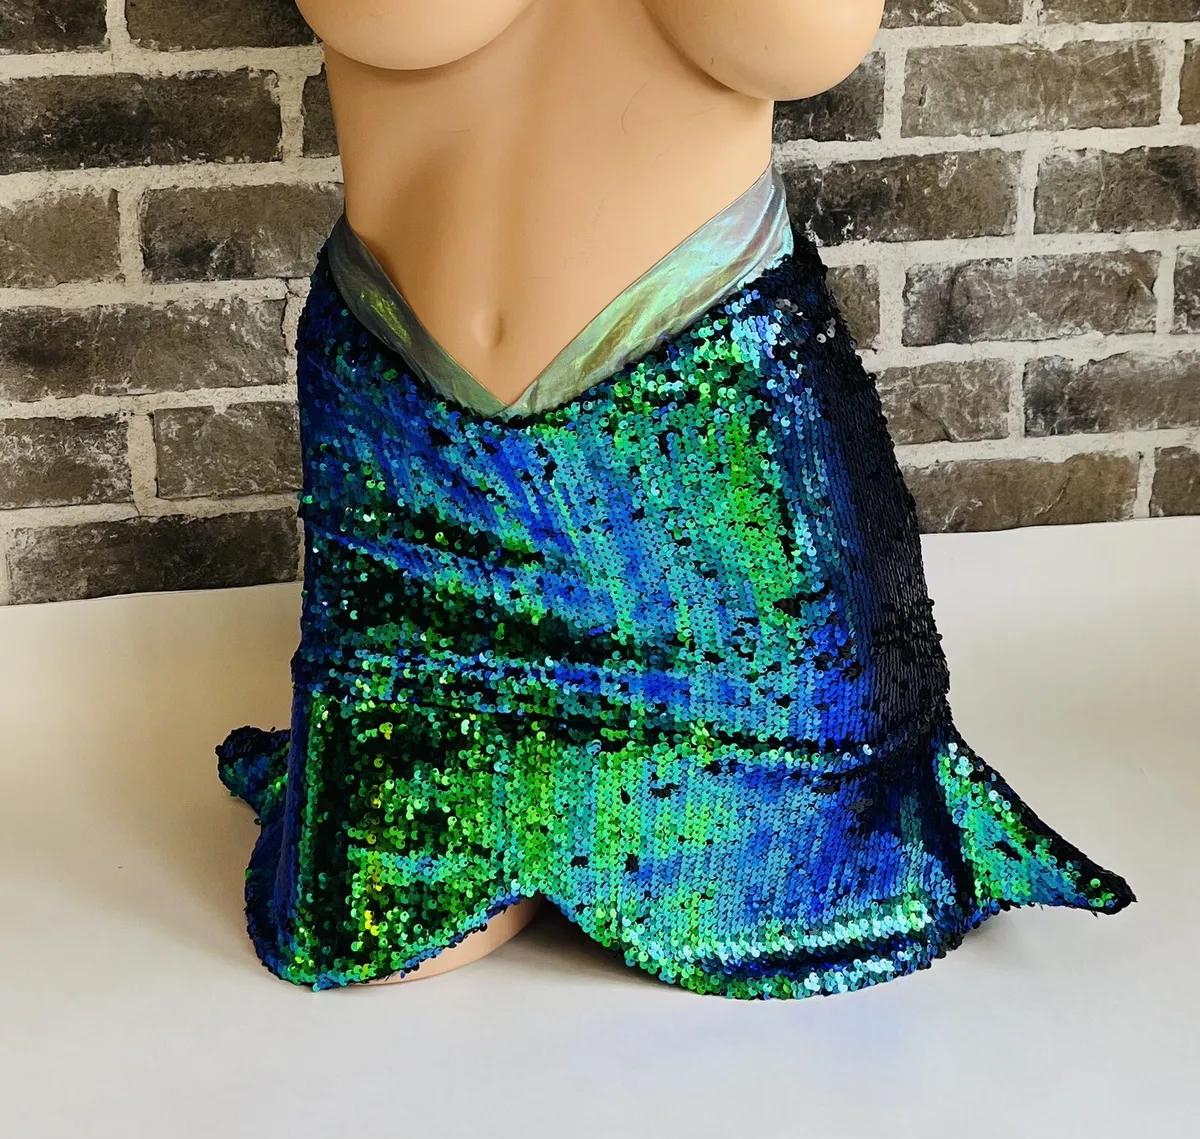 Best of Mermaid short skirt costume